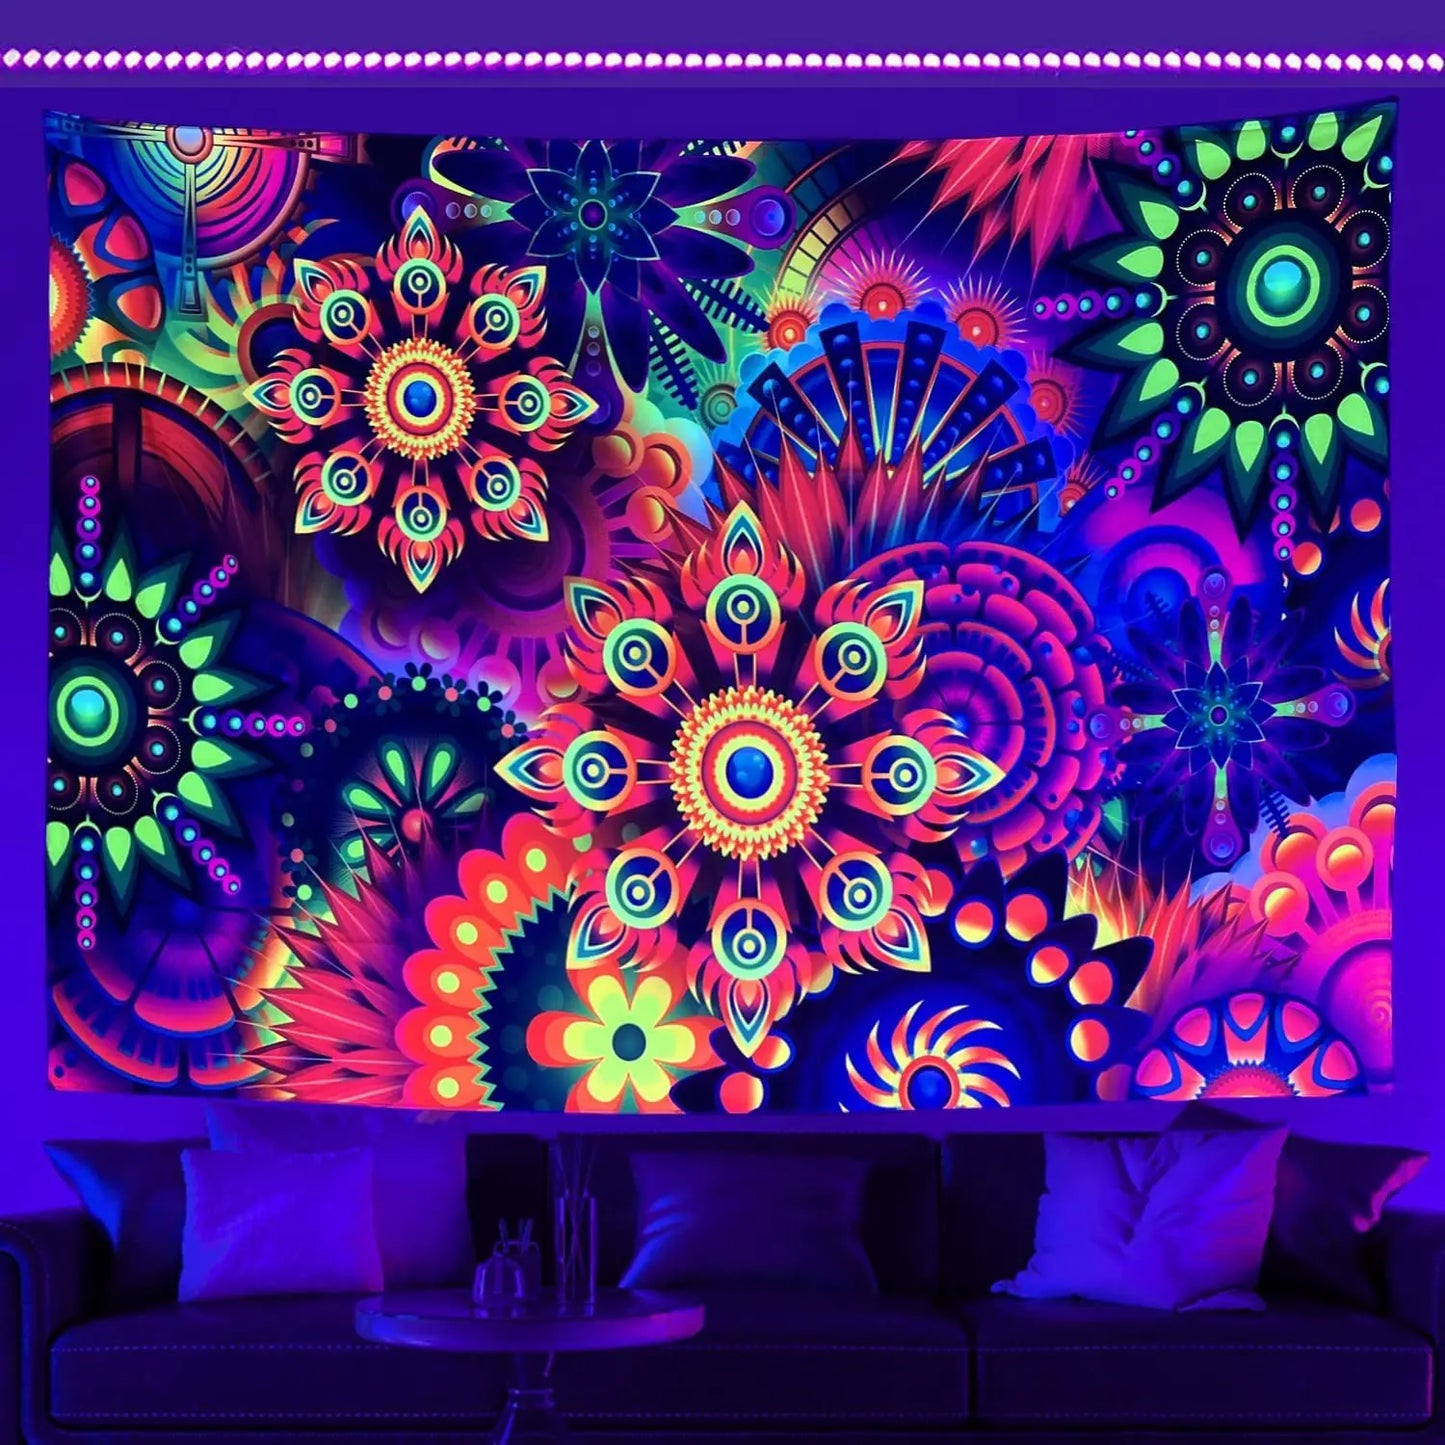 Tapisserie murale fluorescente d'astronaute UV, tapisserie Hippie suspendue pour chambre à coucher, décoration de pièce indépendante